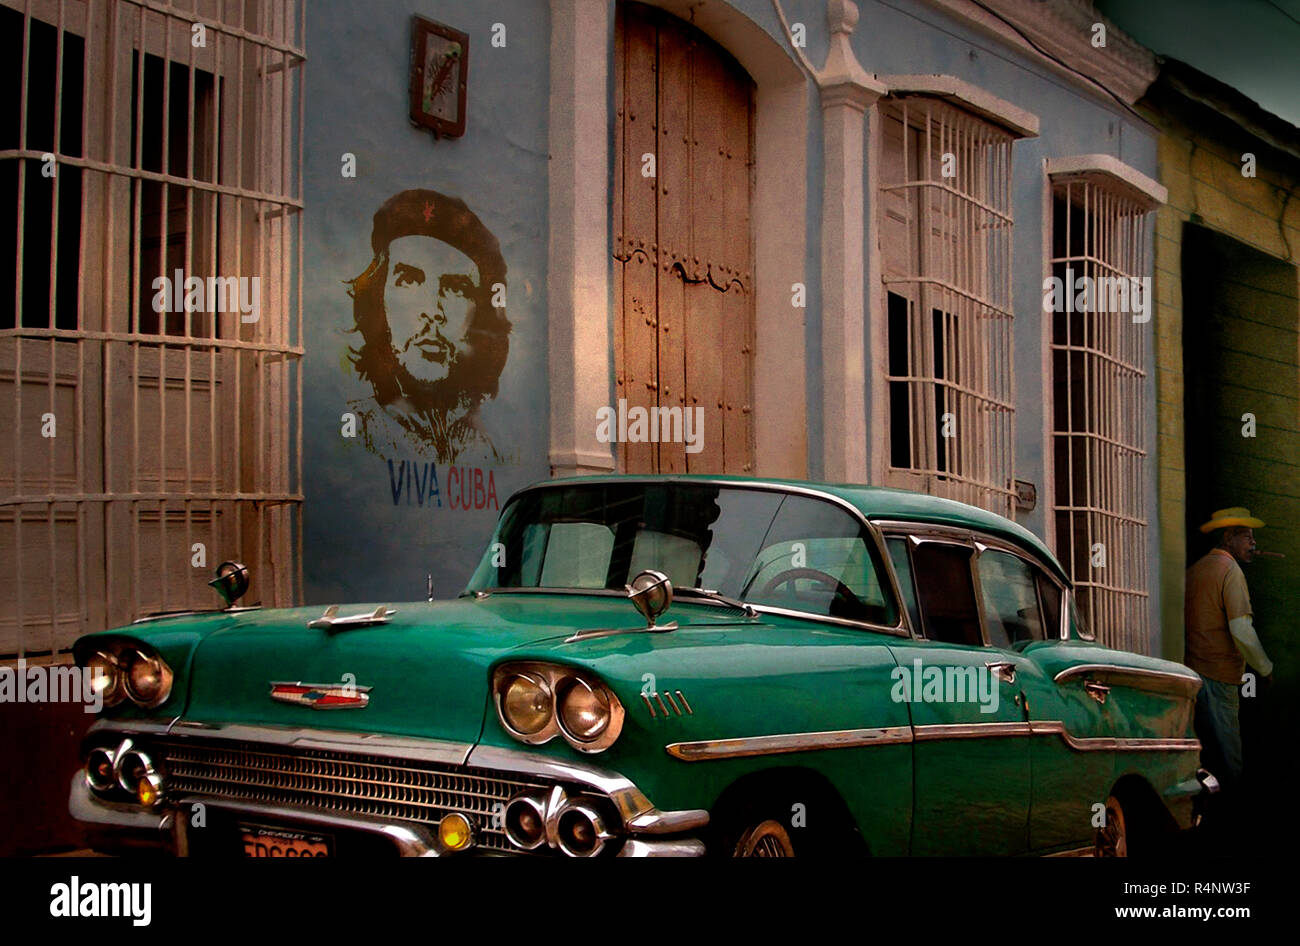 Oldtimer und Graffiti von Che Guevara in der Straße, Trinidad, Â SanctiÂ SpritusÂ Provinz, Kuba Stockfoto